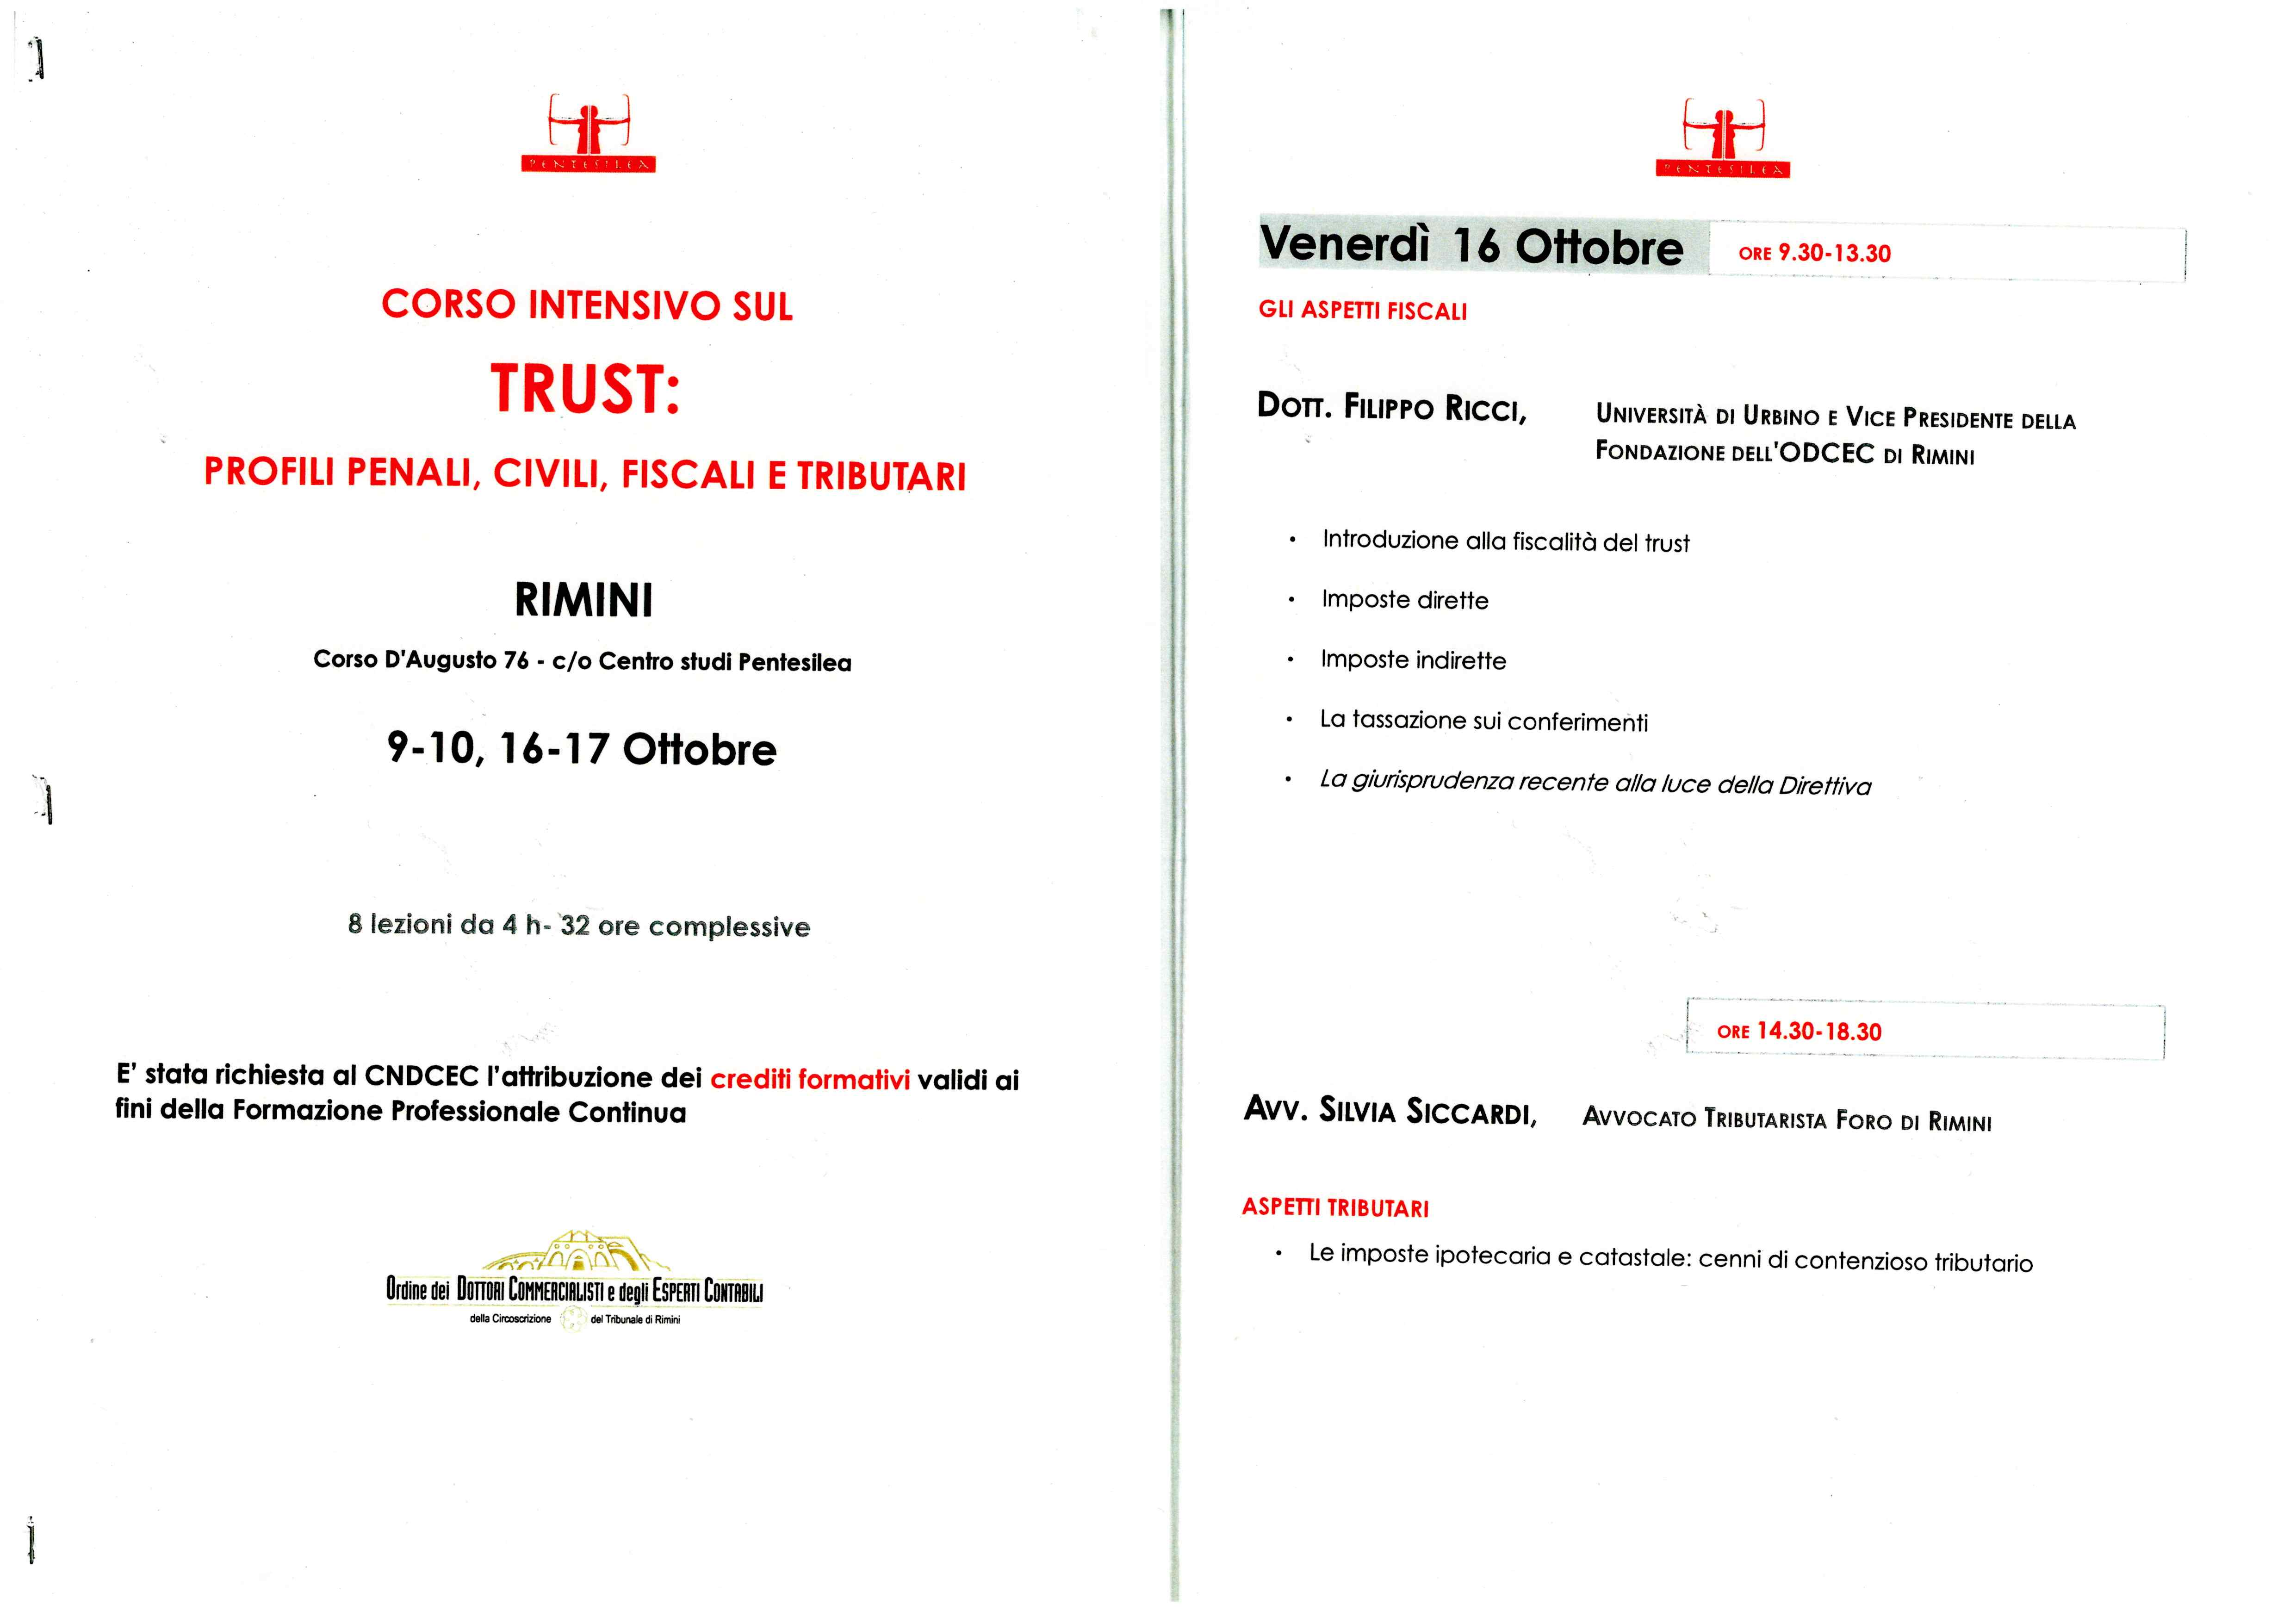 Corso intensivo sul Trust 16.10.2020 - Rimini - La fiscalità del Trust